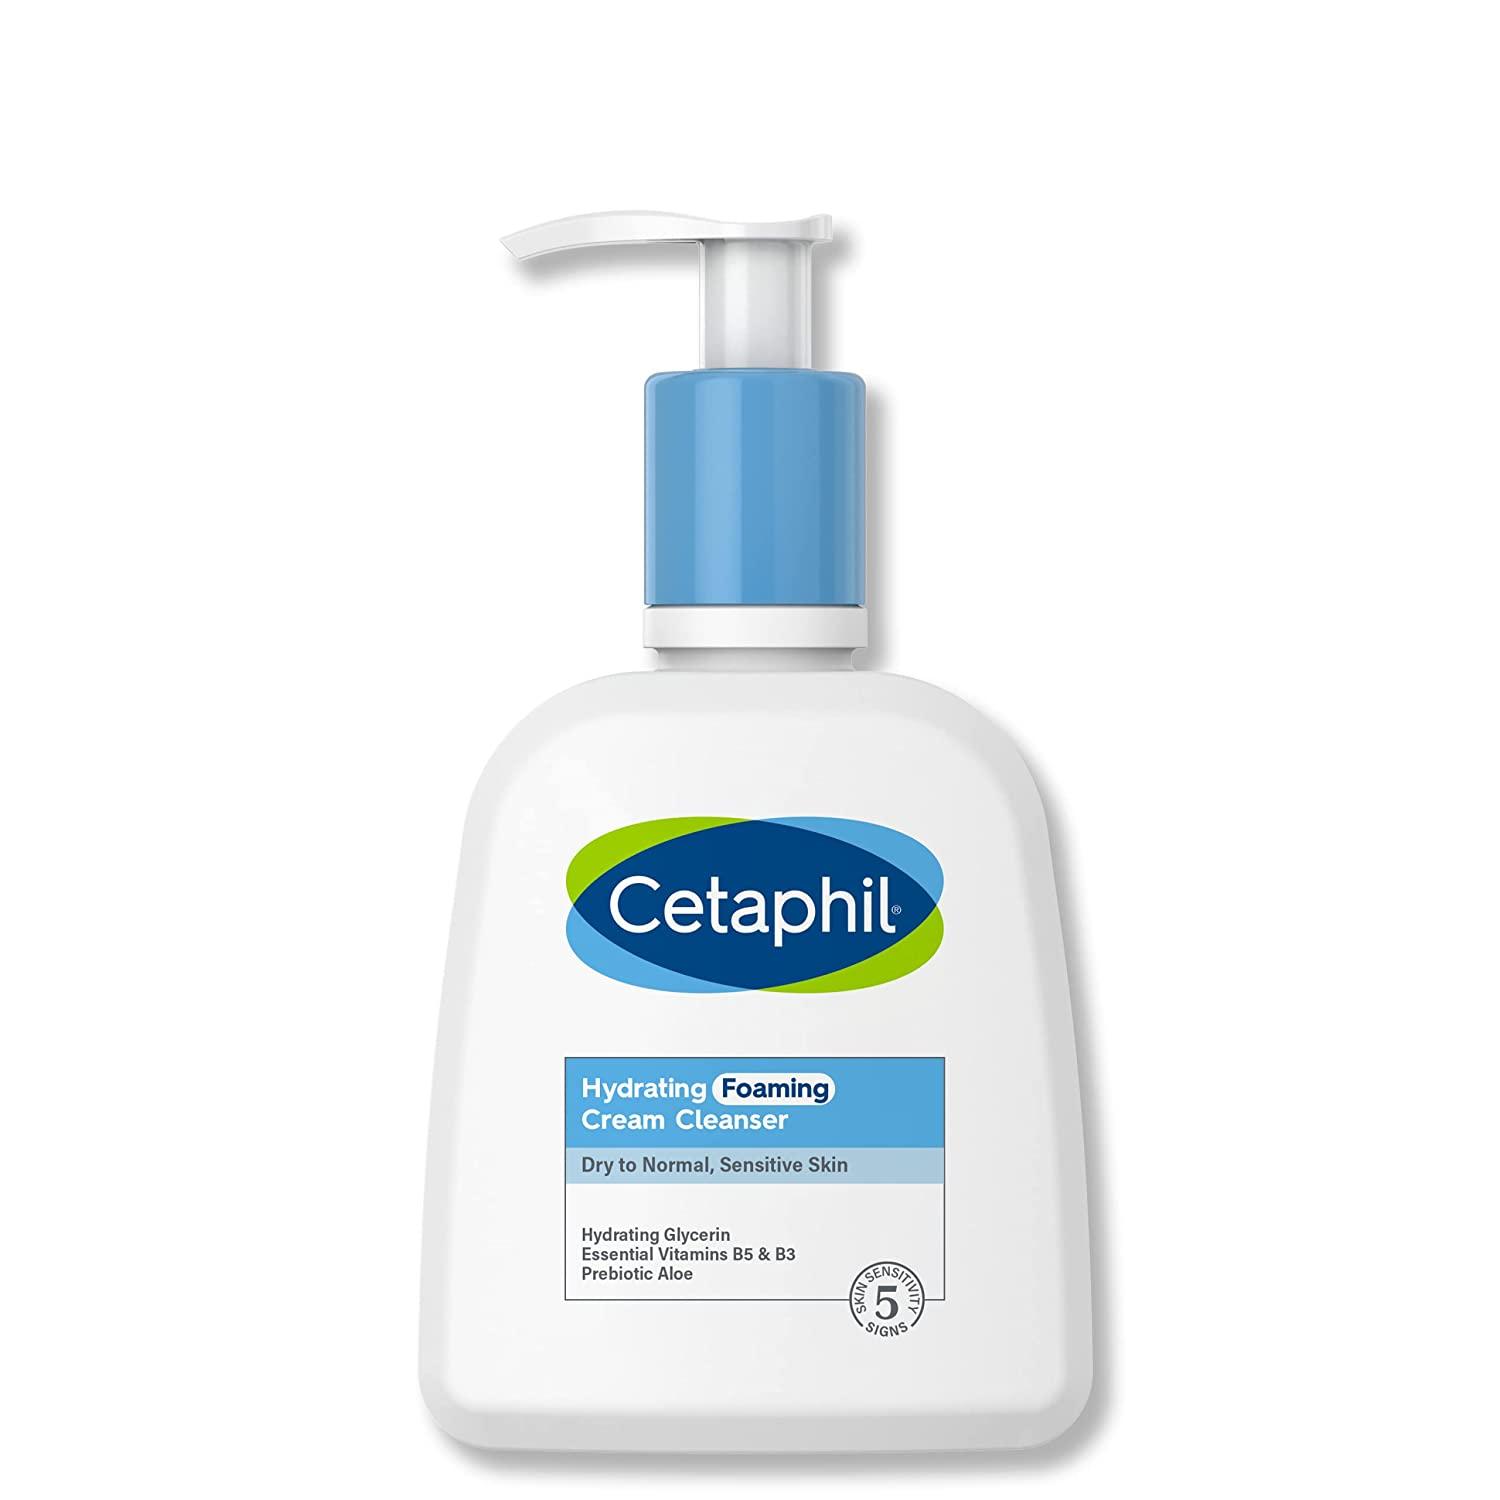 Cetaphil Hydrating Foaming Cream Cleanser là sản phẩm sữa rửa mặt thiết kế riêng cho da nhạy cảm